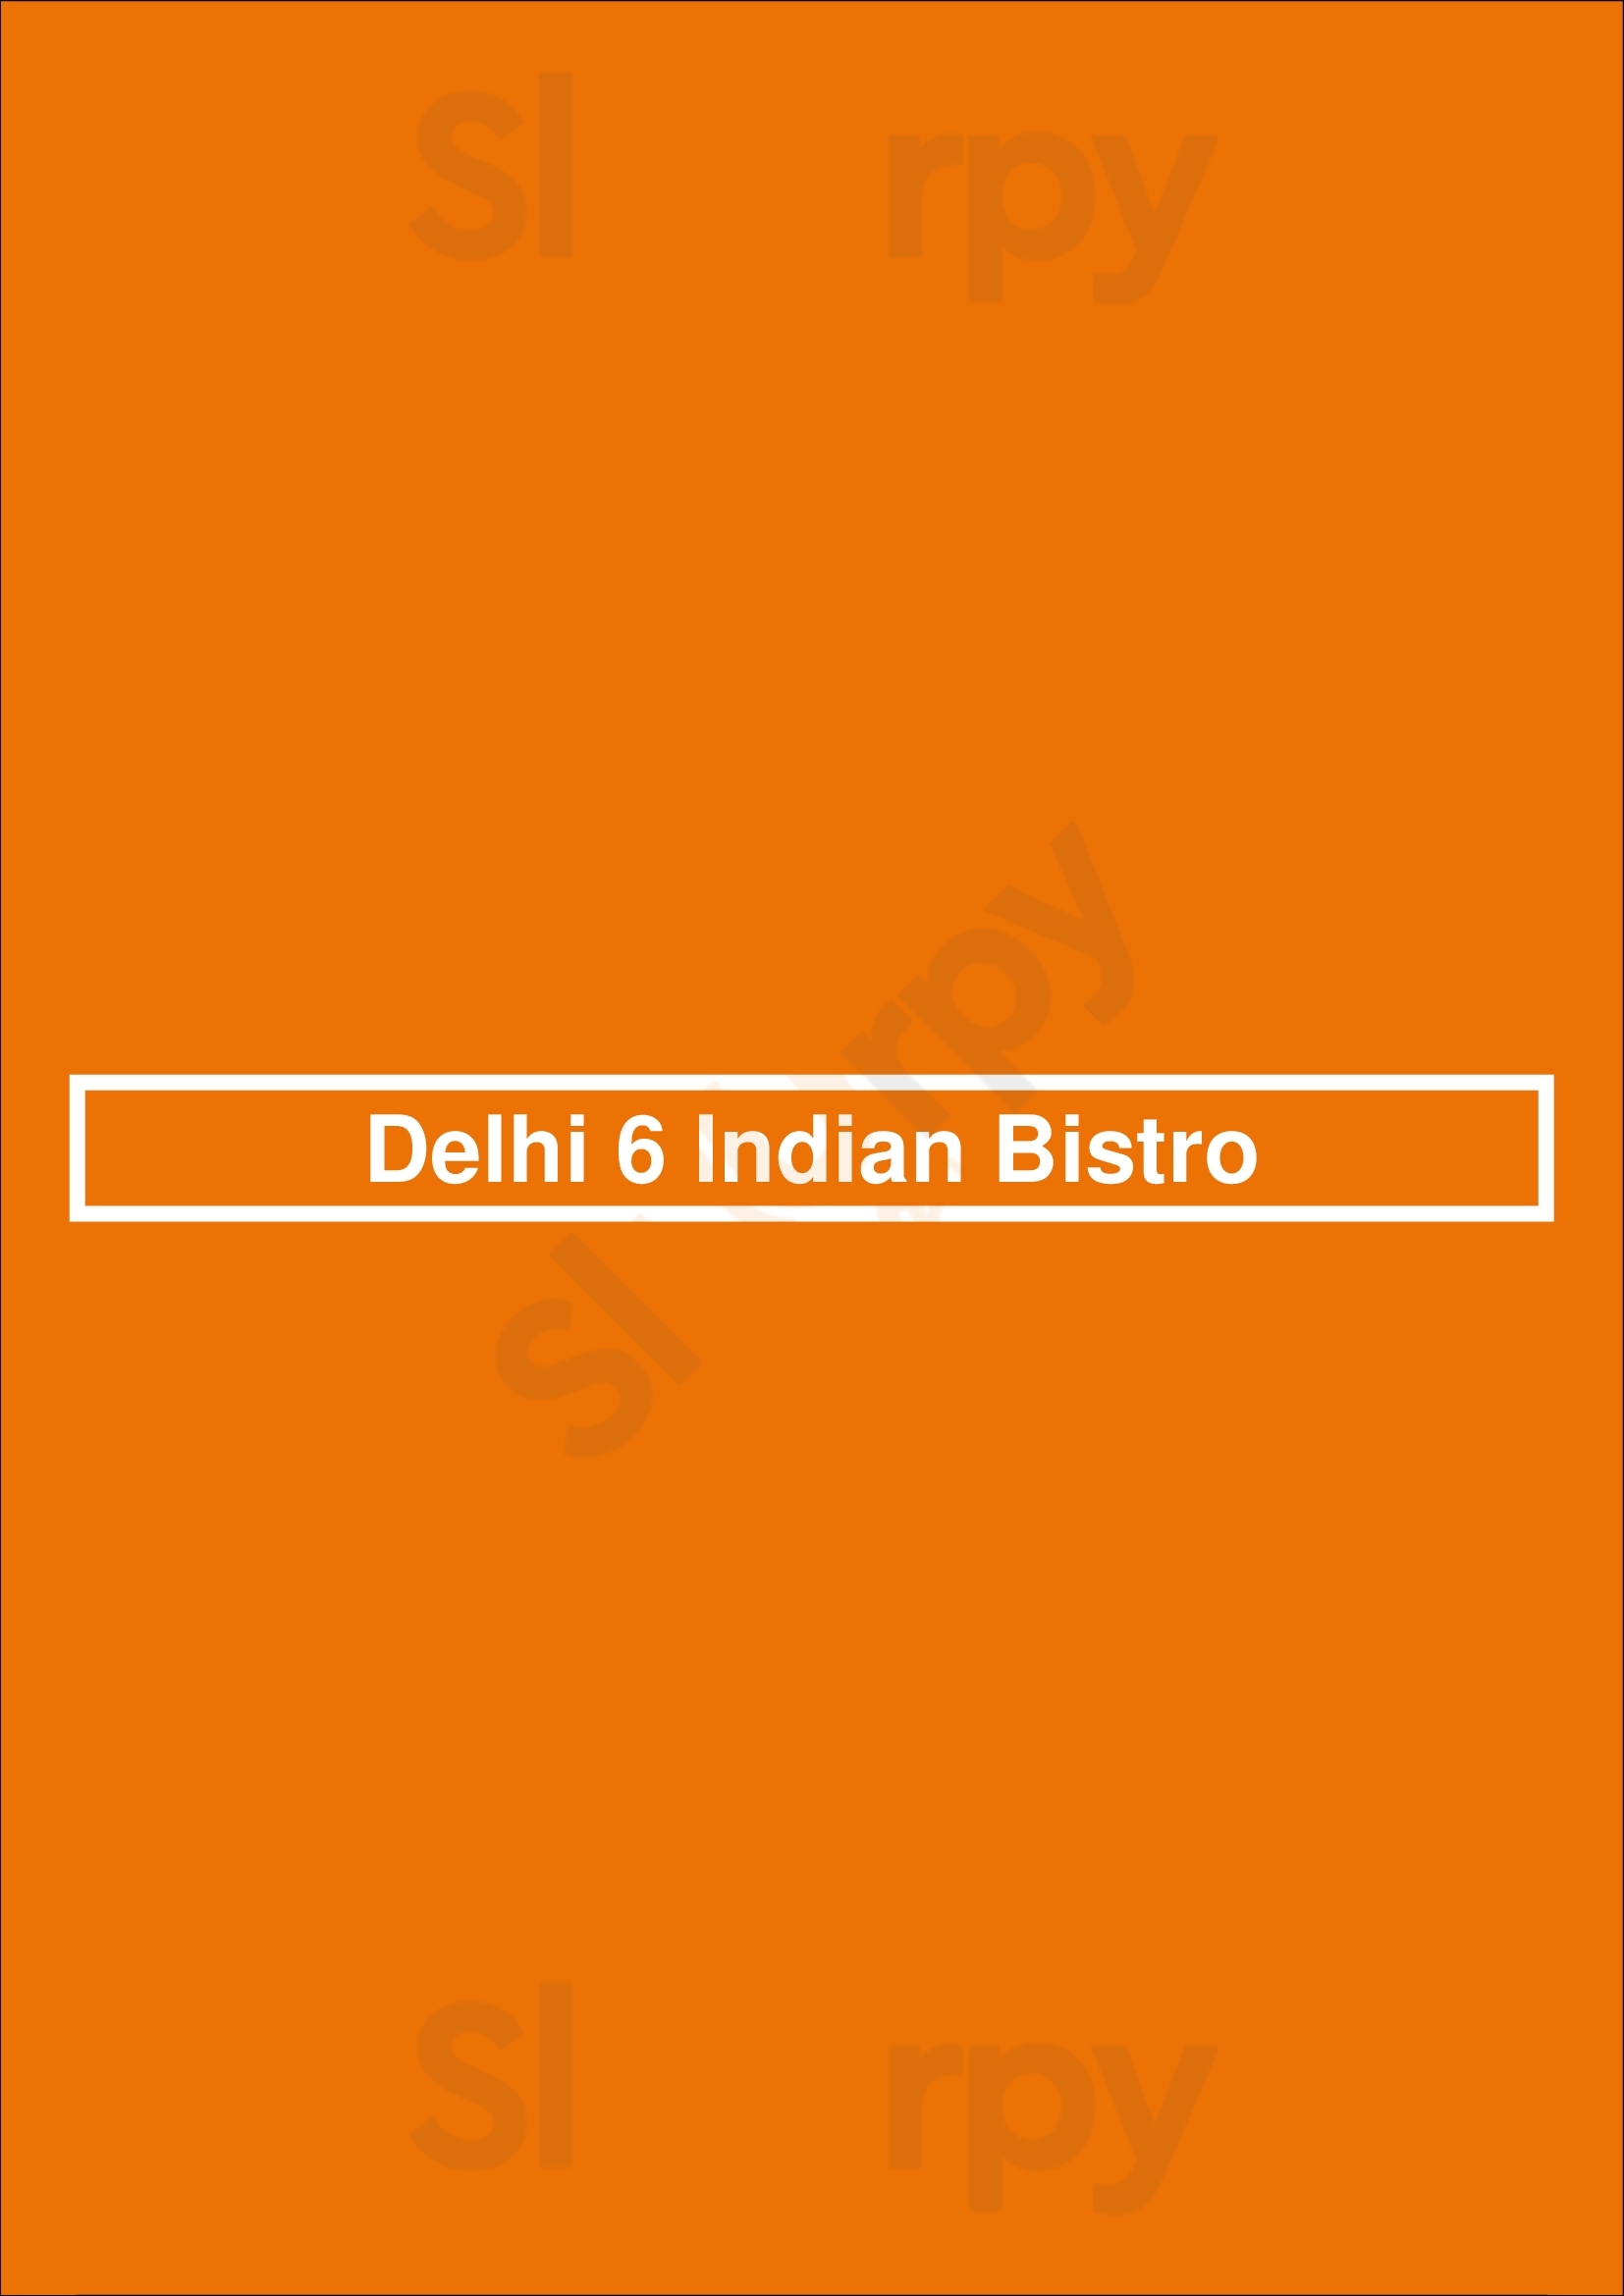 Delhi 6 Indian Bistro Vancouver Menu - 1